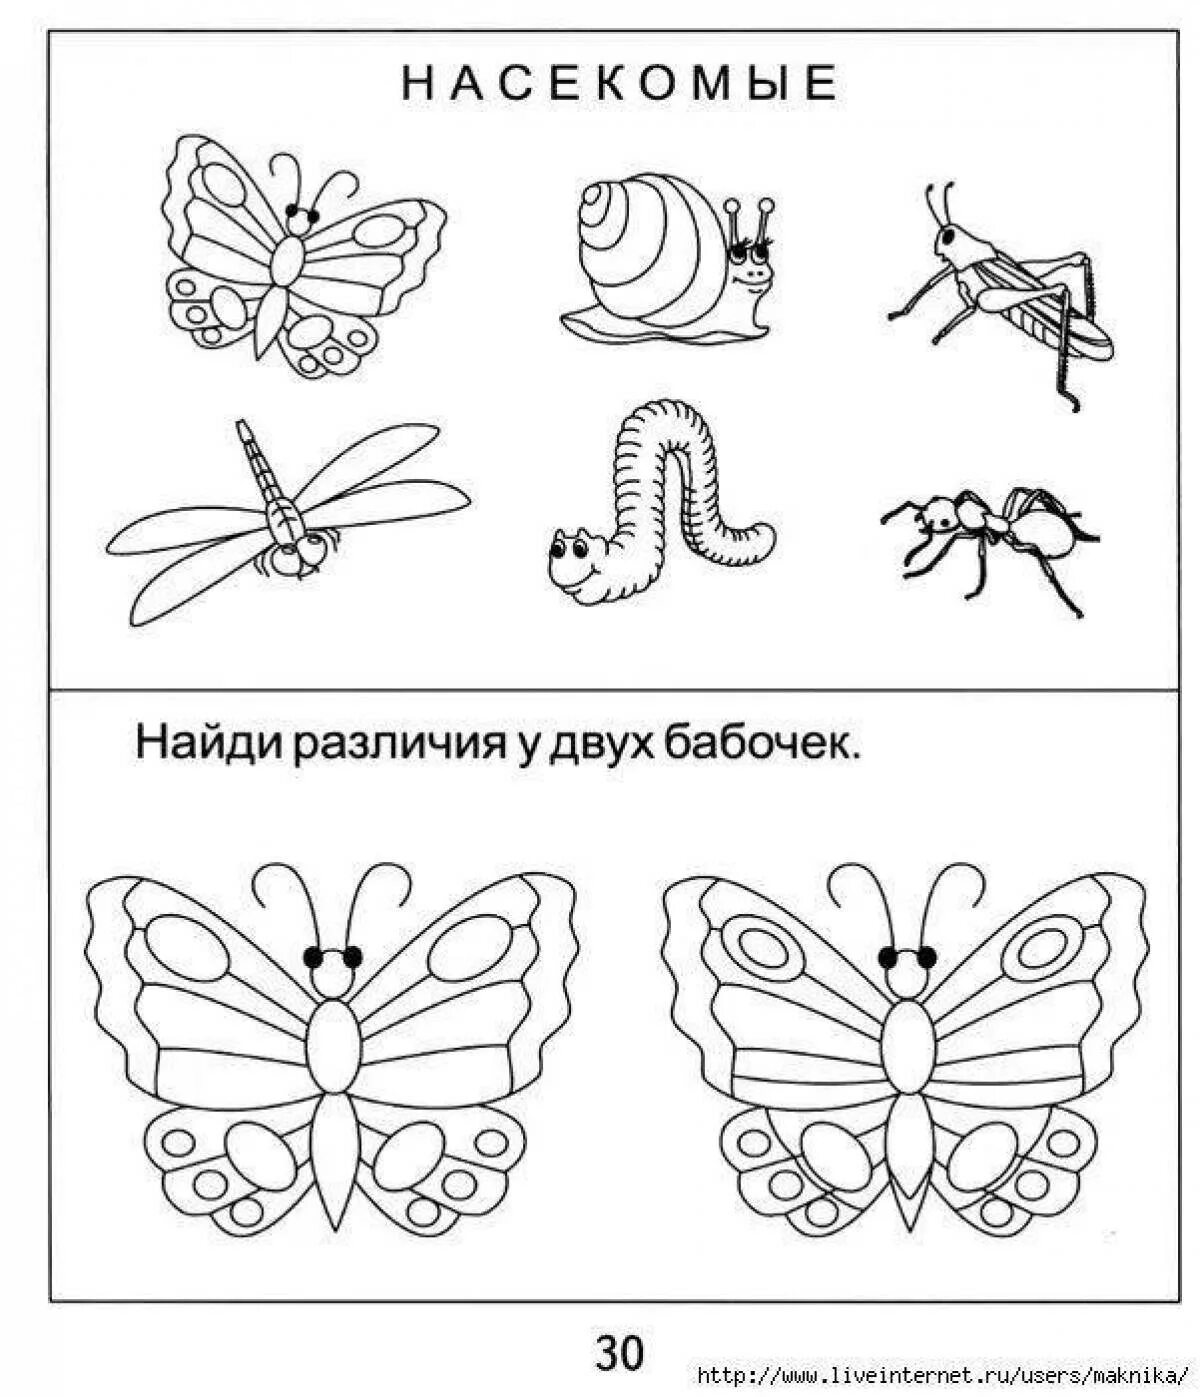 Насекомые задания для дошкольников. Задания по теме насекомые для дошкольников. Насекомые раскраска для детей. Бабочка задания для дошкольников.